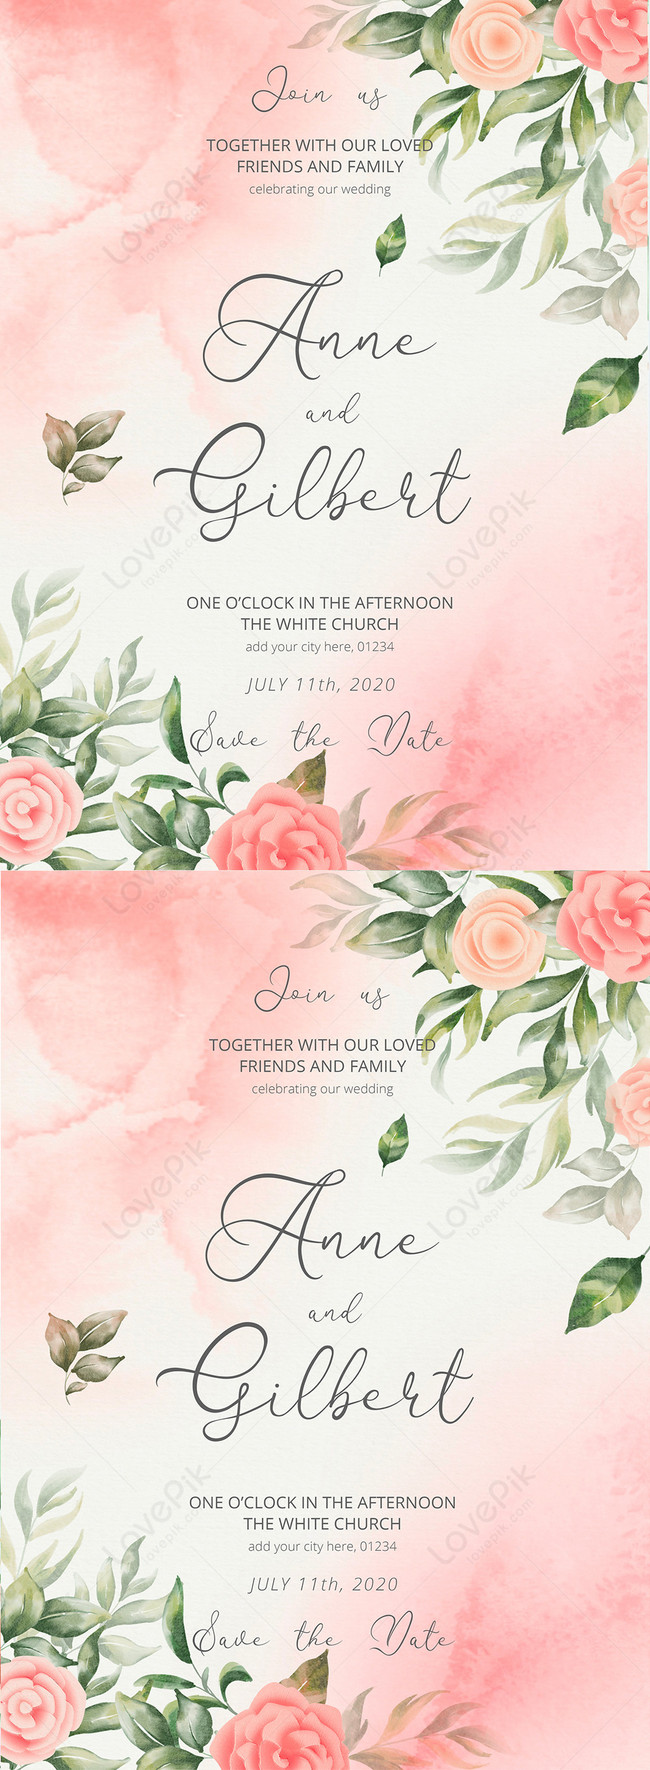 Thiệp cưới hoa nhí sự phá cách trong thiết kế | An Hieu Wedding